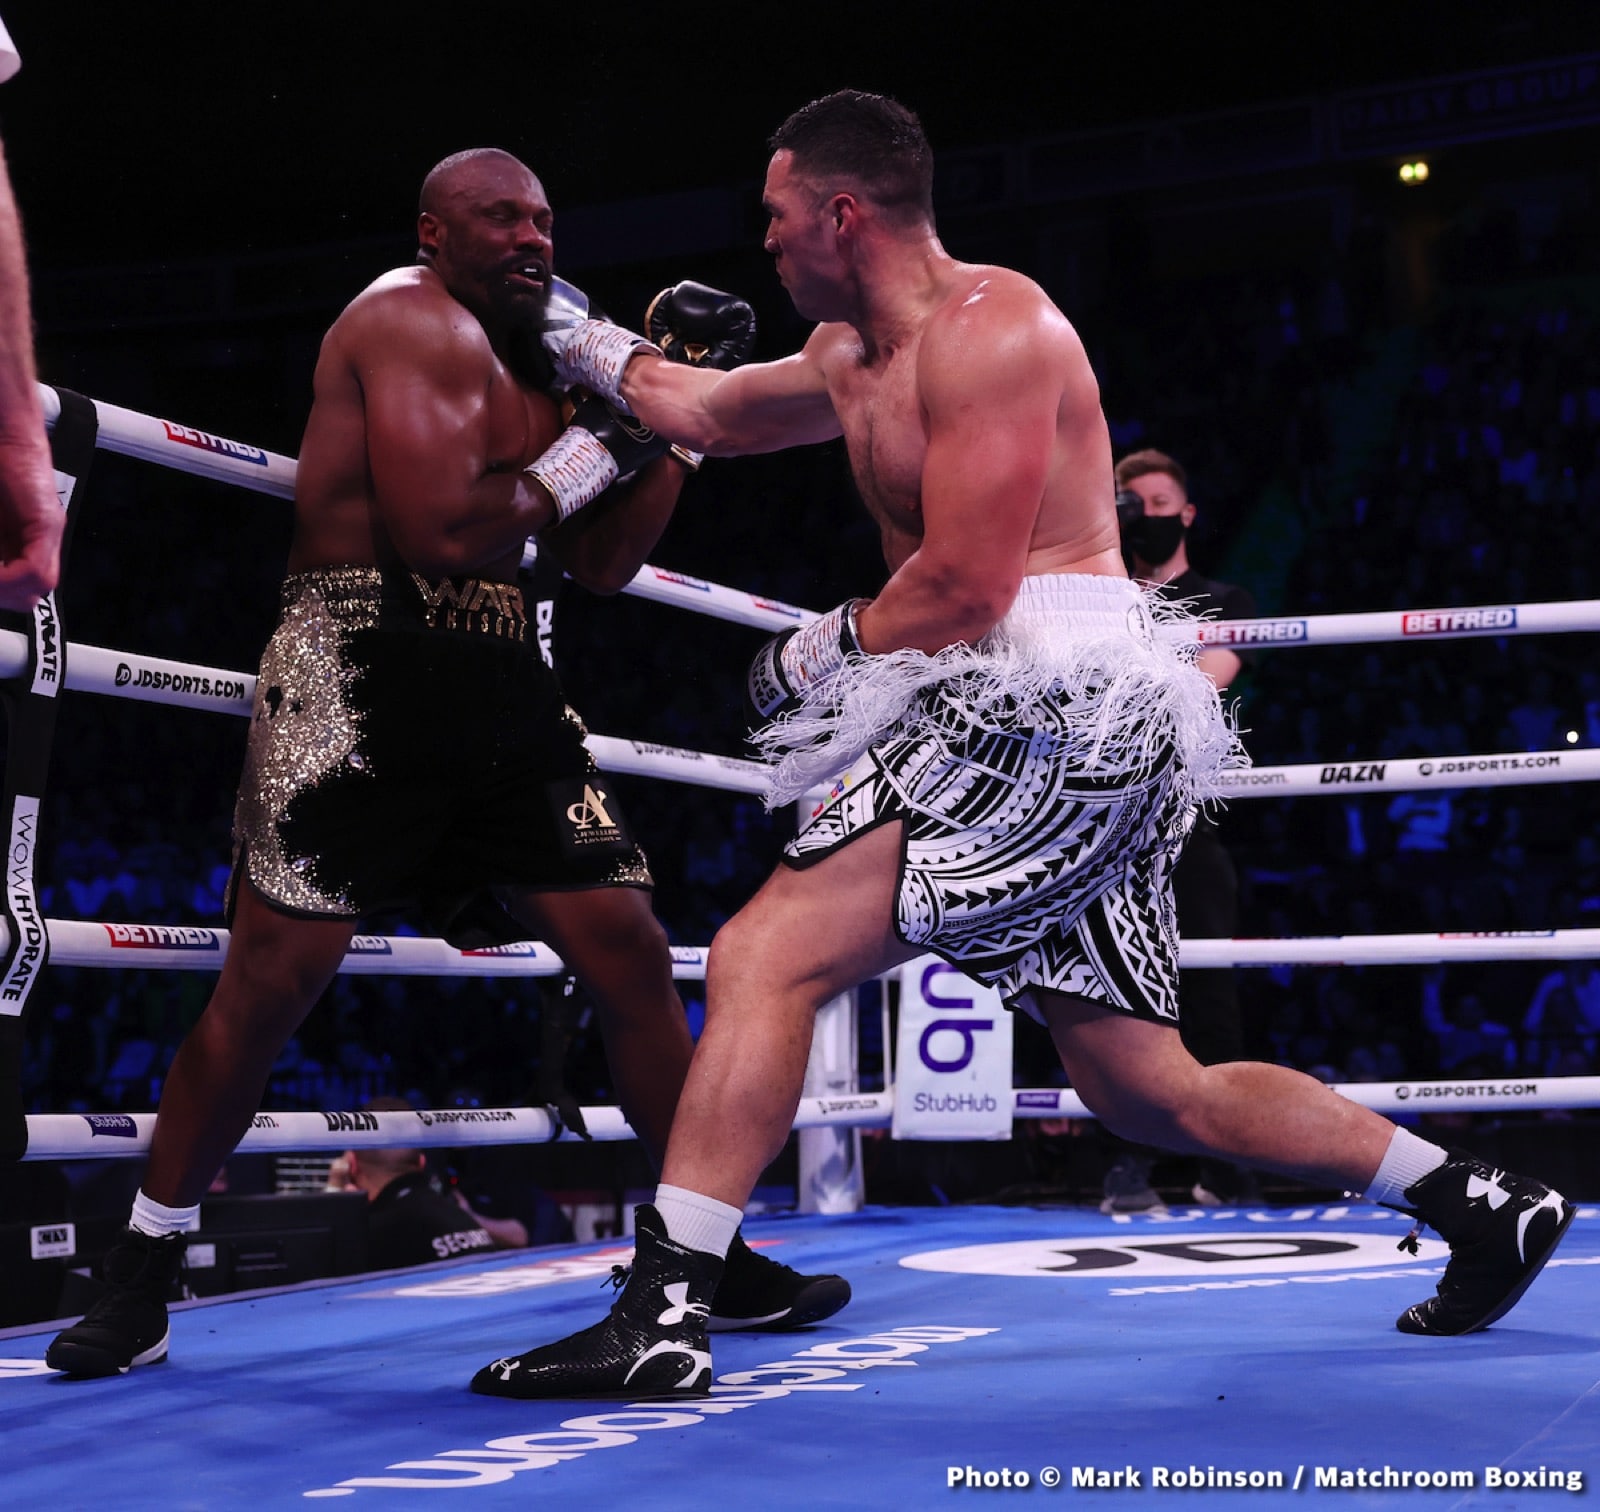 Carlos Gongora boxing image / photo